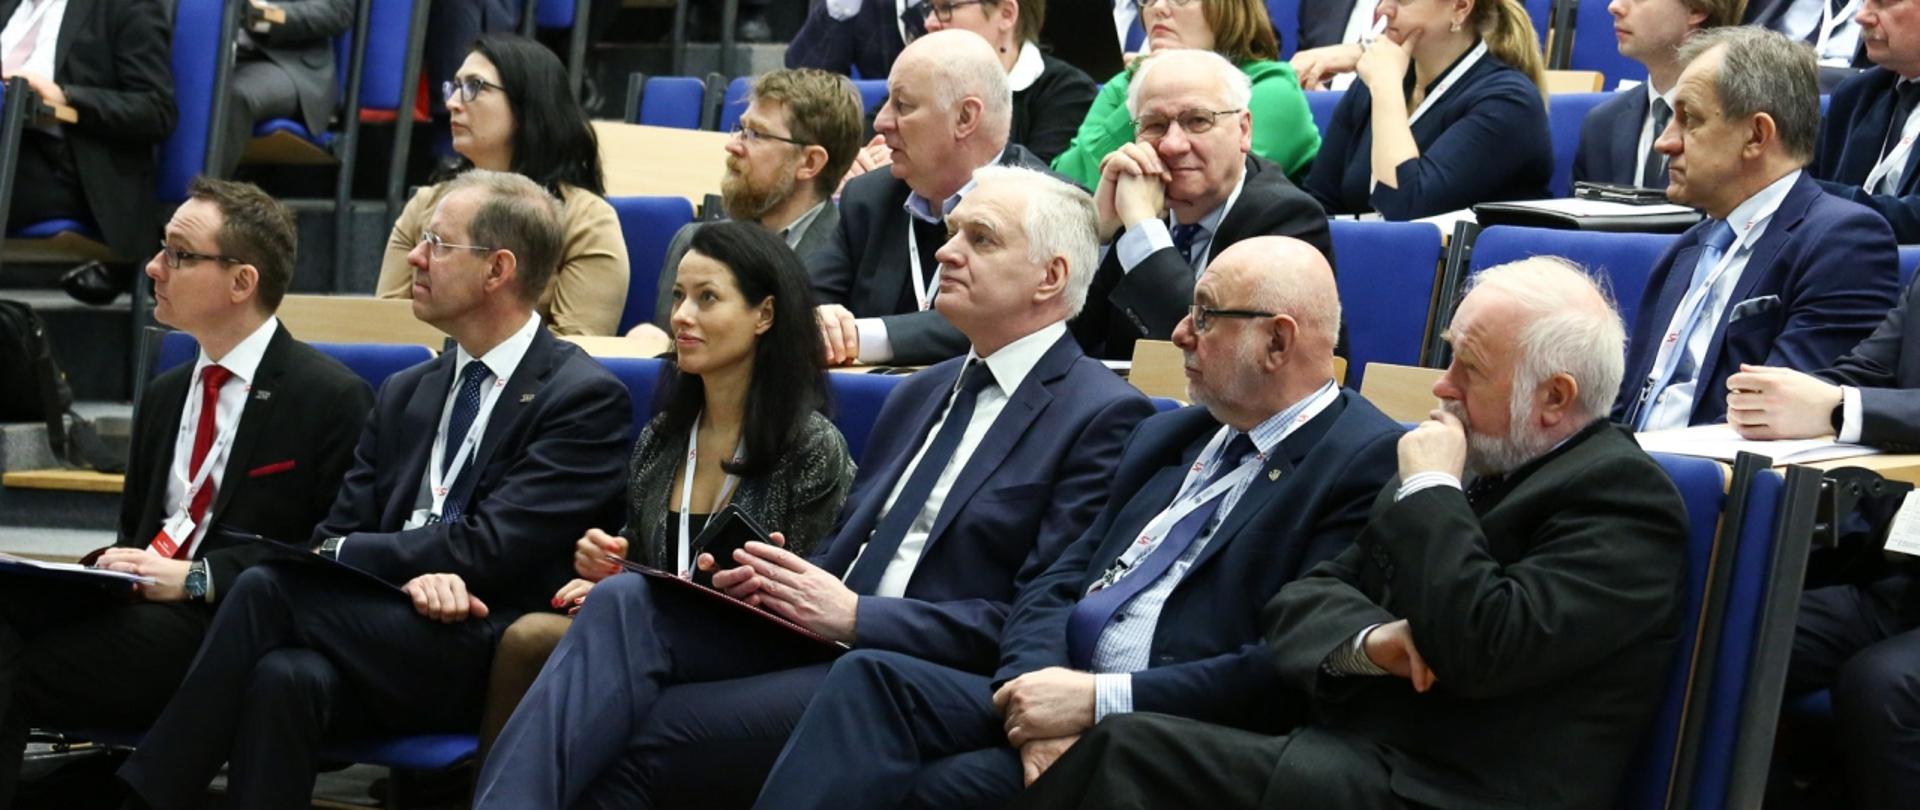 Widok na pierwsze rzędy siedzeń, na zdjęciu minister Gowin, dr Budzanowska i przedstawiciele Rad Uczelni.